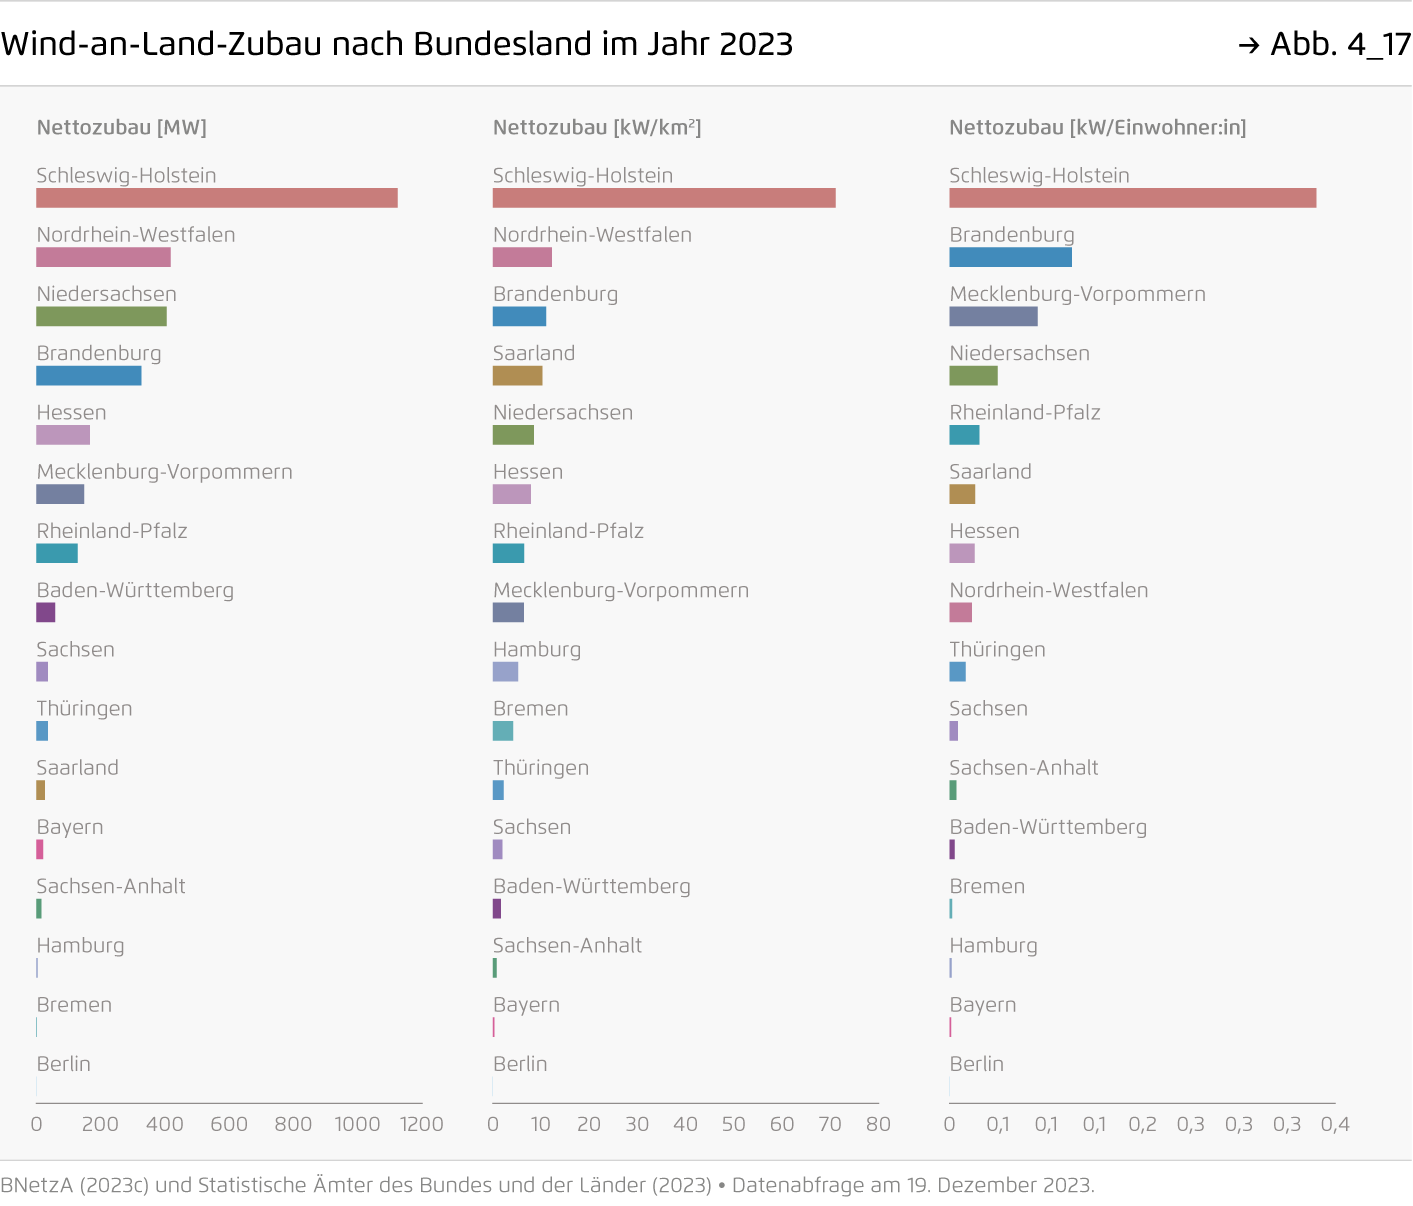 Preview for Wind-an-Land-Zubau nach Bundesland im Jahr 2023